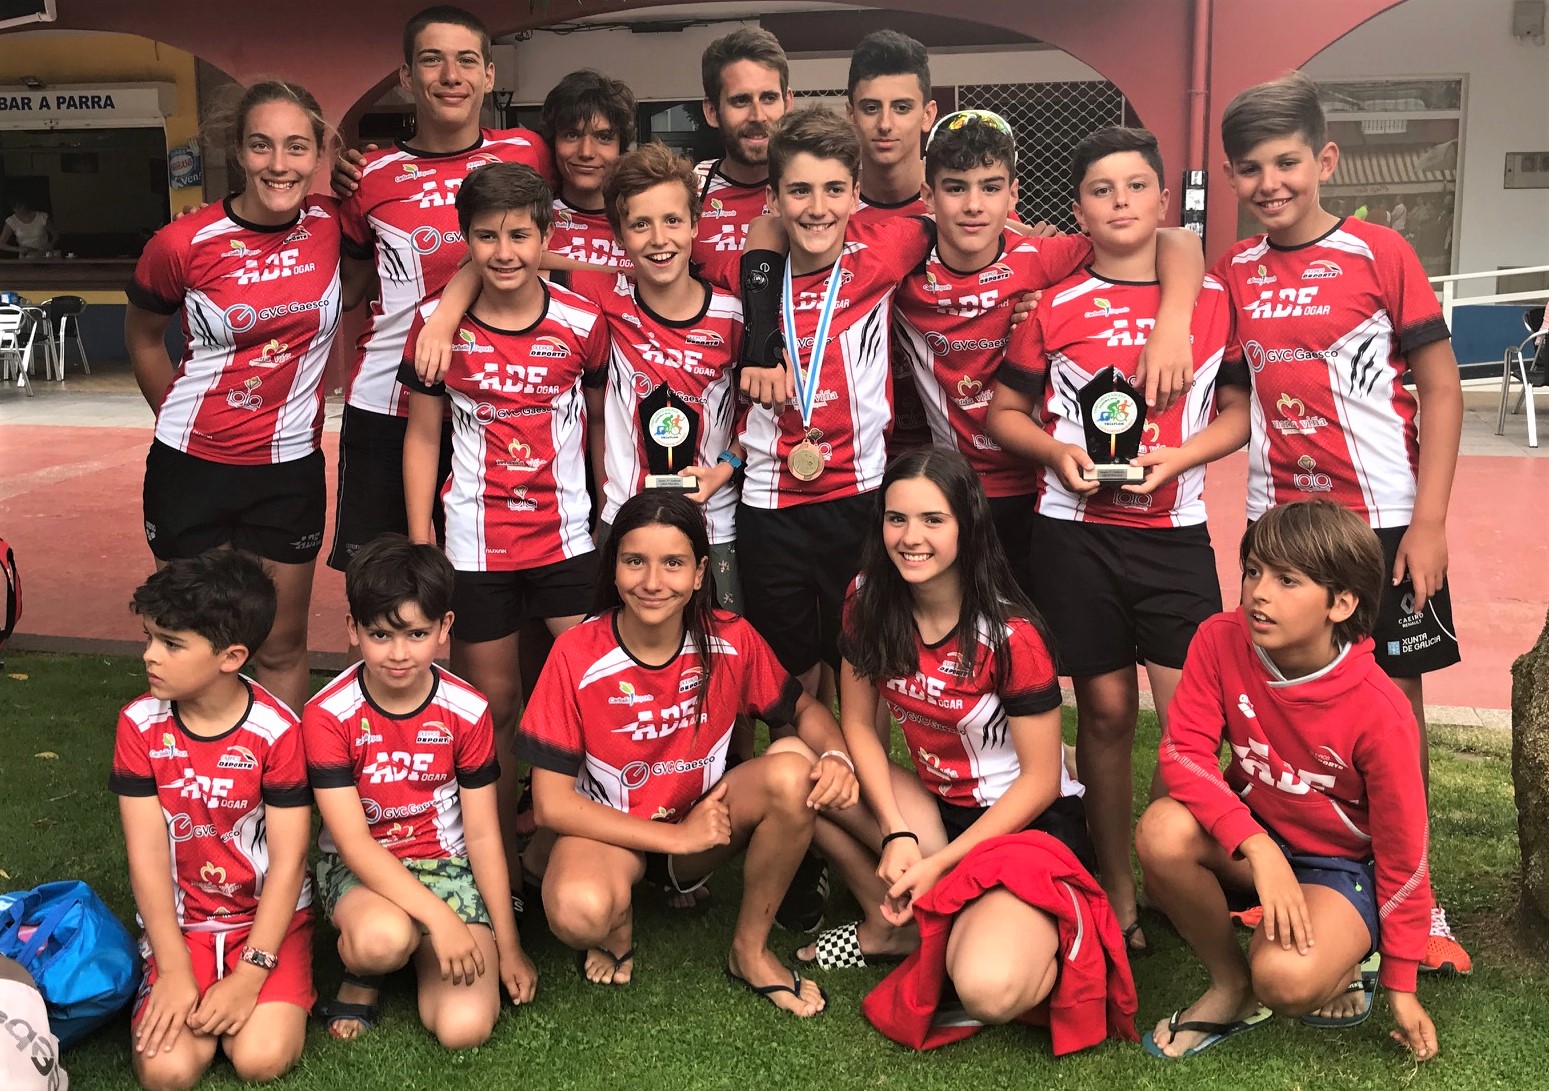 3 Bronces e un meritorio 4º posto por clubs no Galego de Tríatlon